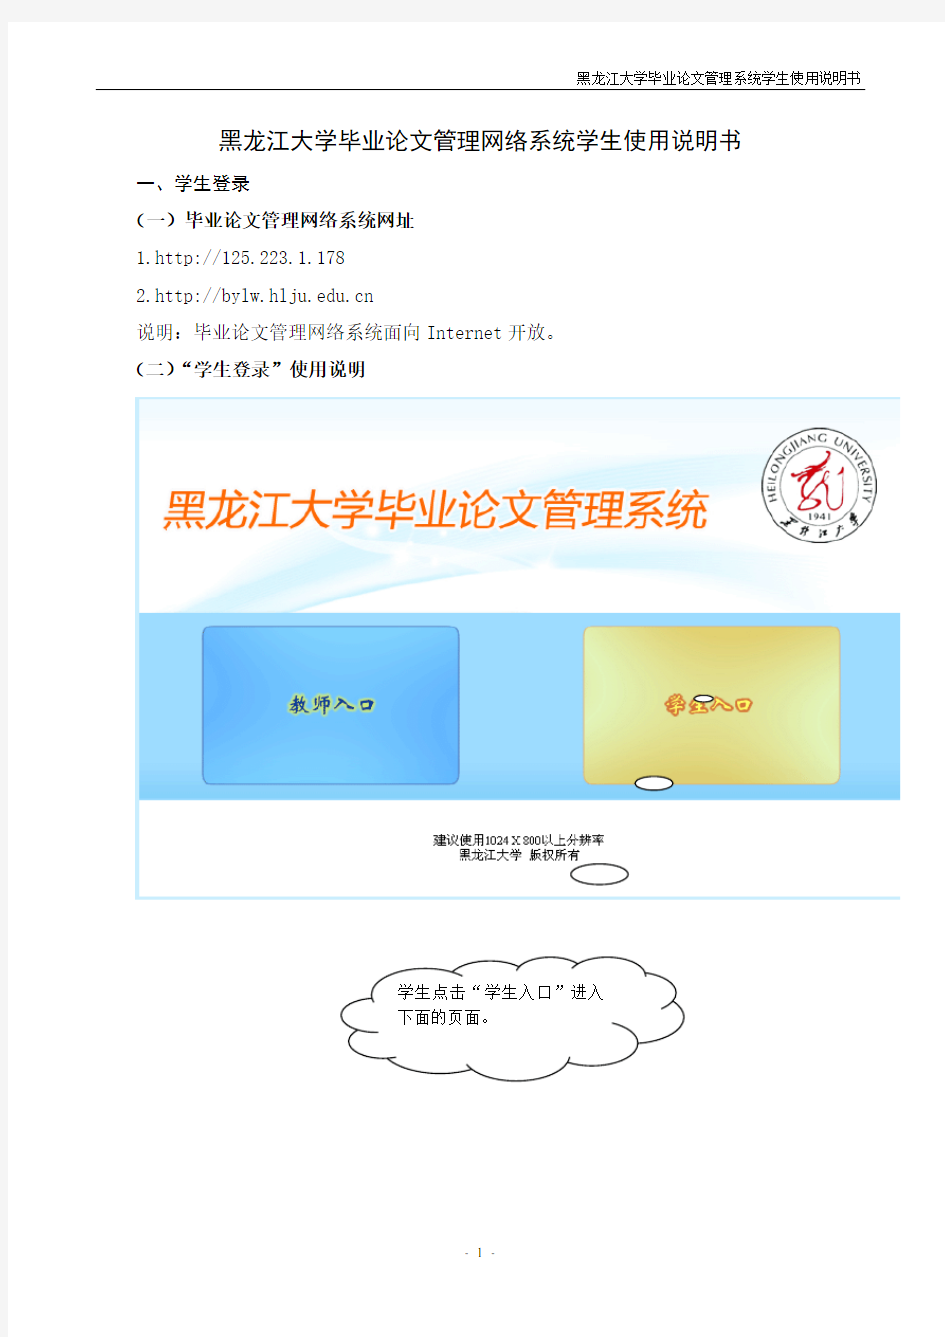 黑龙江大学毕业论文管理网络系统学生使用说明书